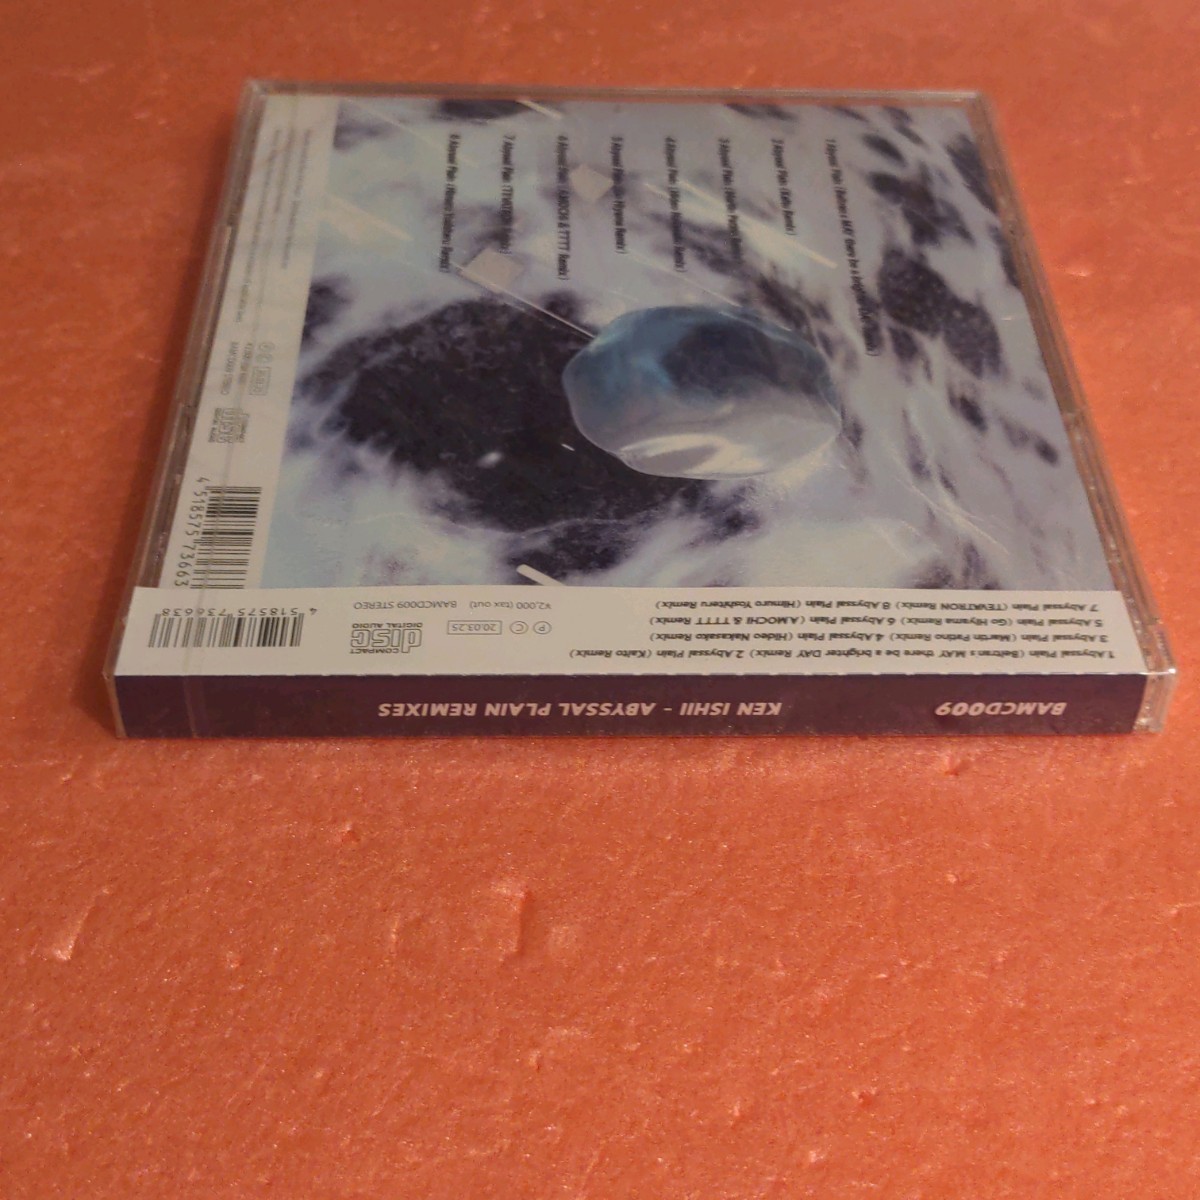  нераспечатанный CD с лентой KEN ISHII Abyssal Plain Remixes талон isii